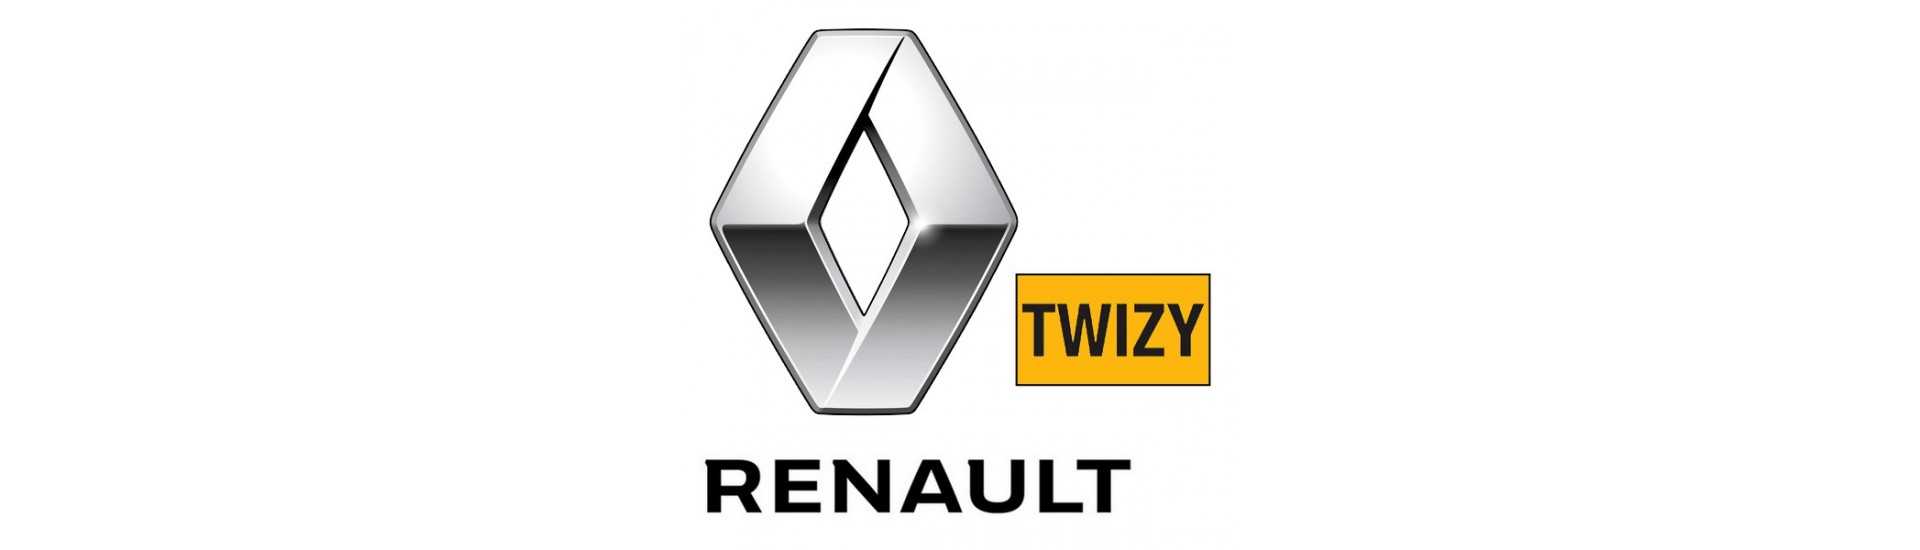 Poignée de porte intérieure pour voiture sans permis Renault Twizy